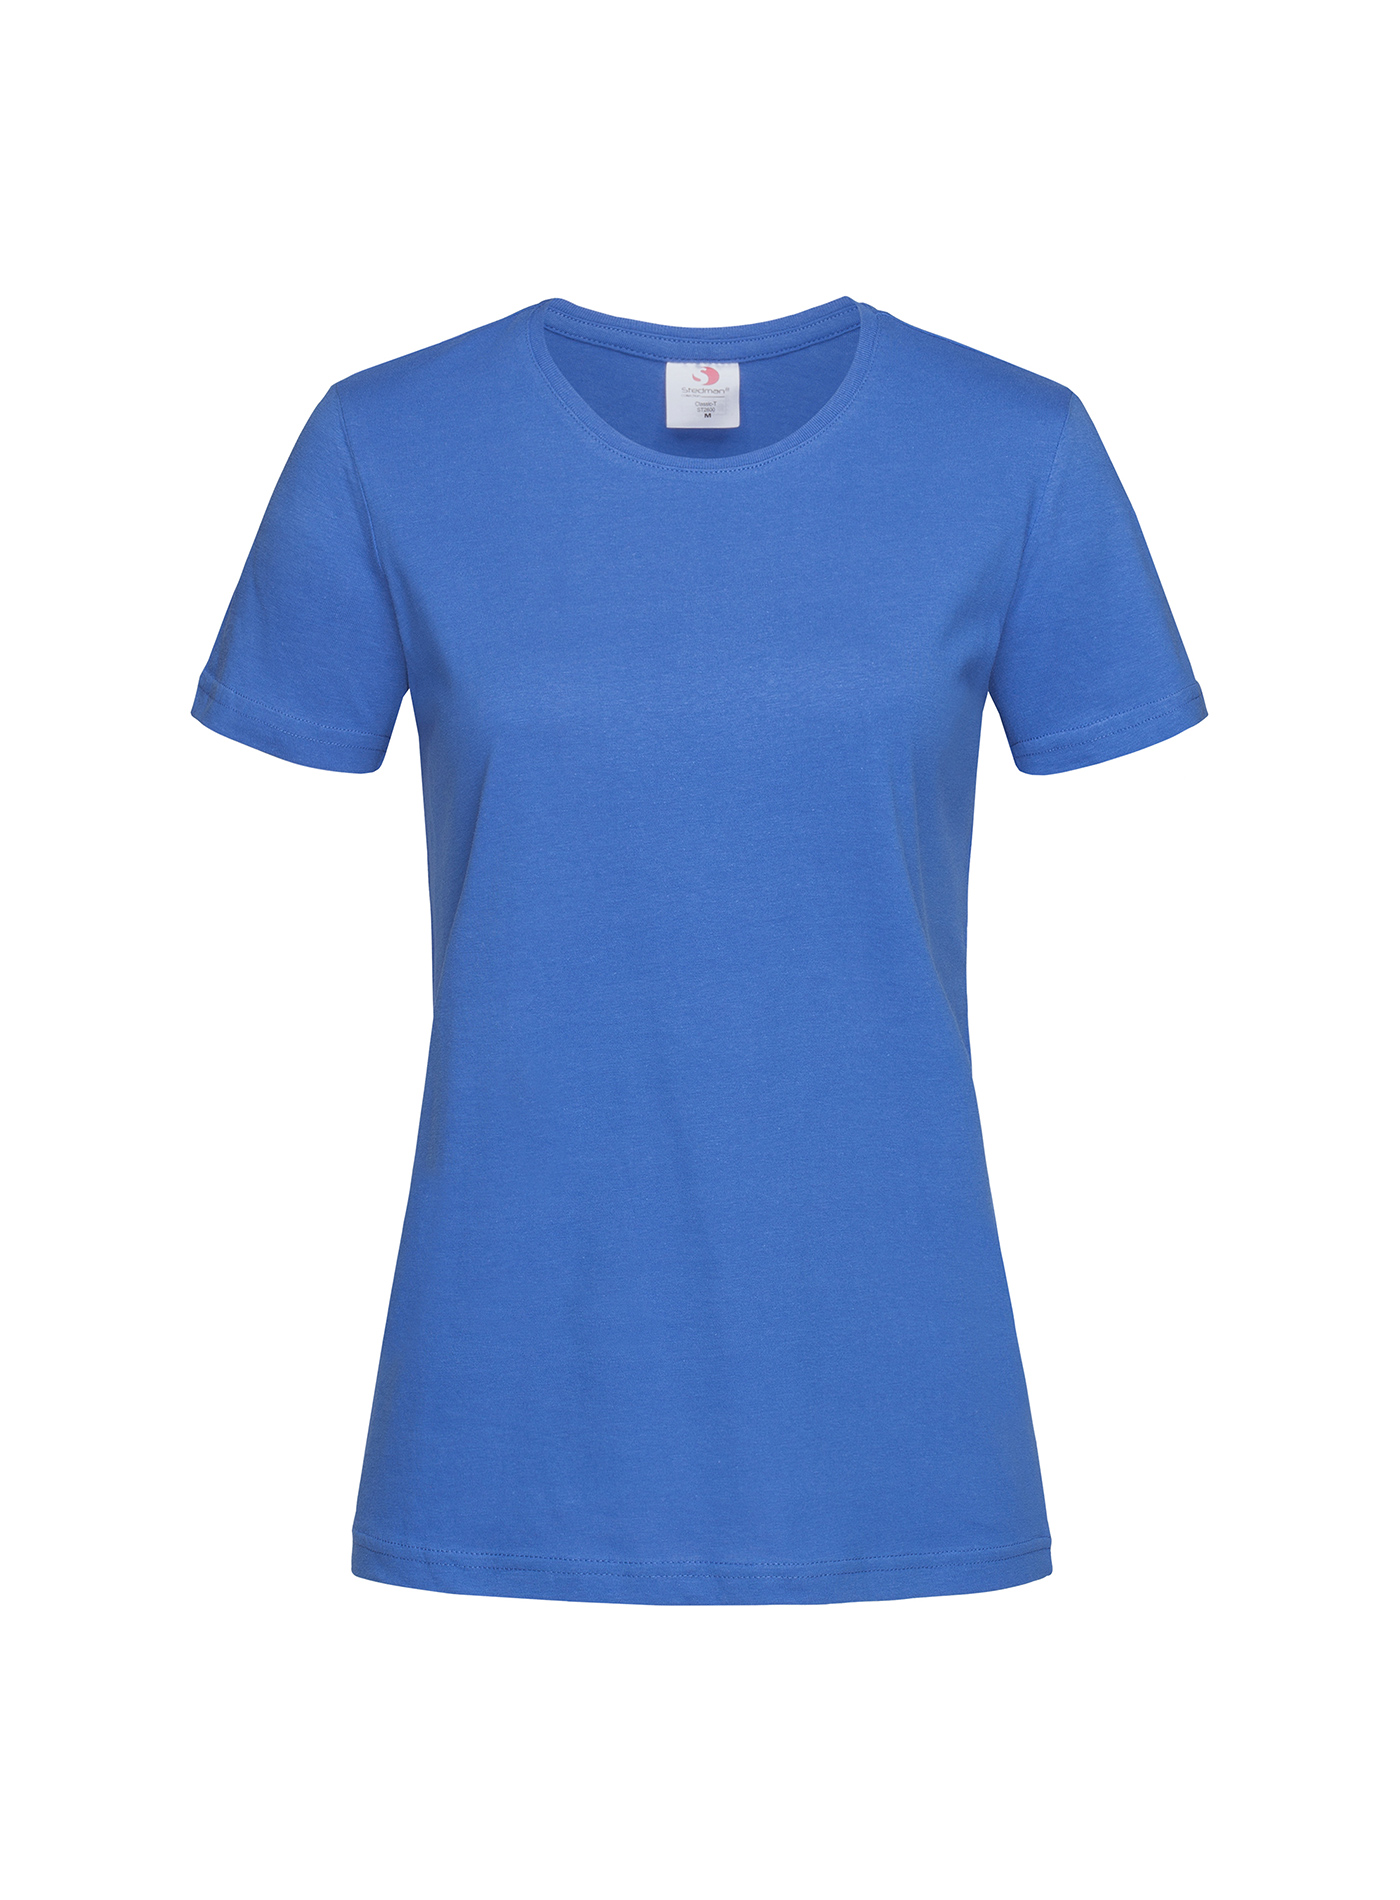 Dámské tričko Stedman Fitted - Královská modrá M